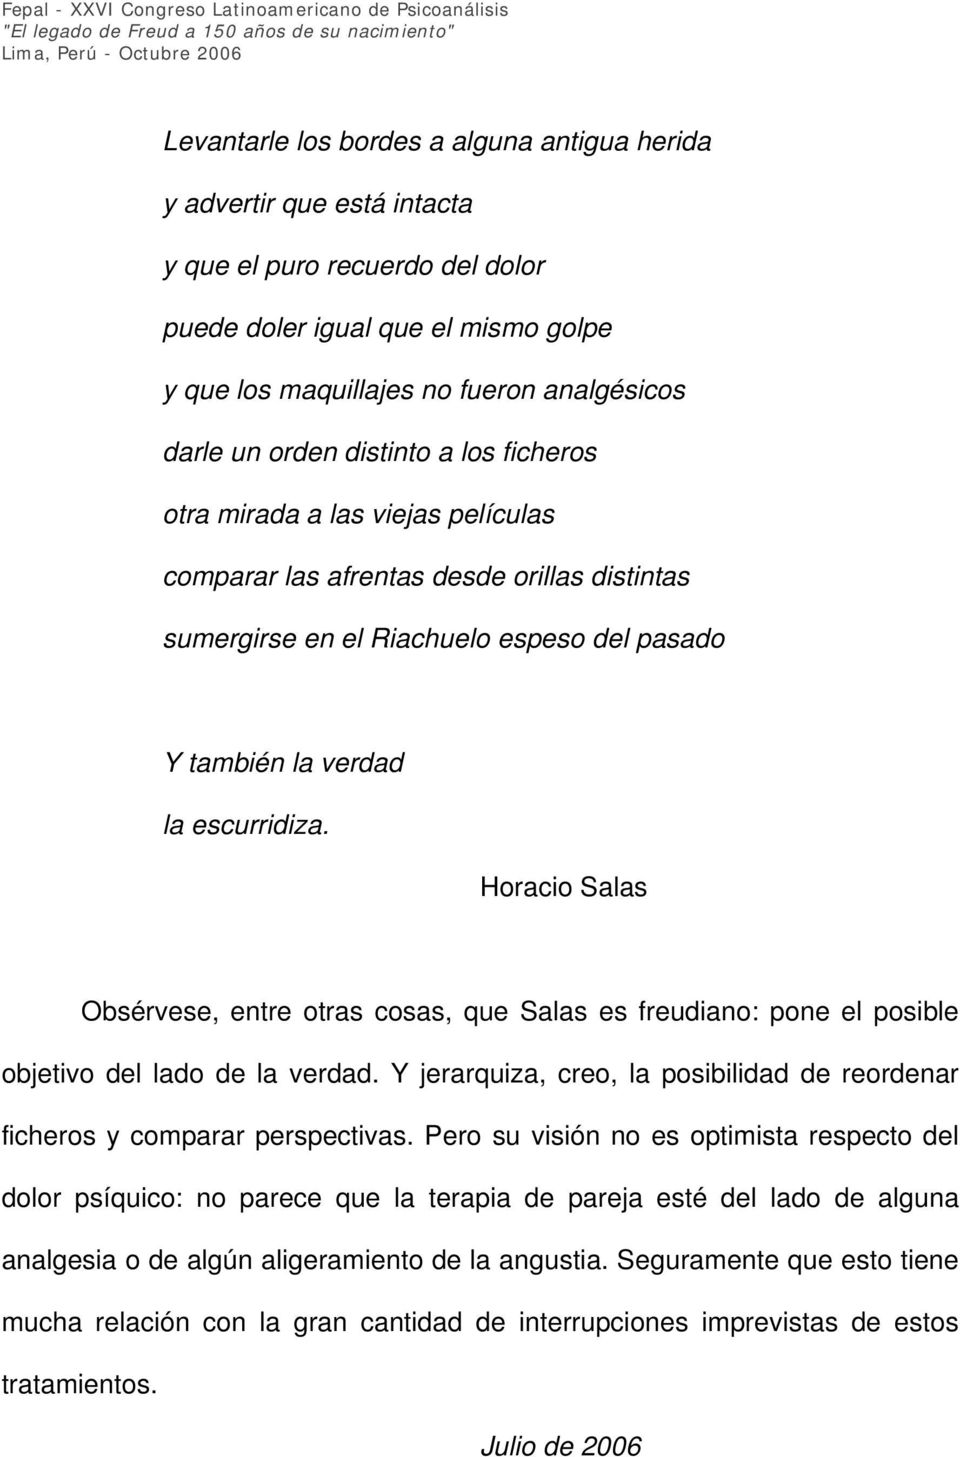 Horacio Salas Obsérvese, entre otras cosas, que Salas es freudiano: pone el posible objetivo del lado de la verdad. Y jerarquiza, creo, la posibilidad de reordenar ficheros y comparar perspectivas.